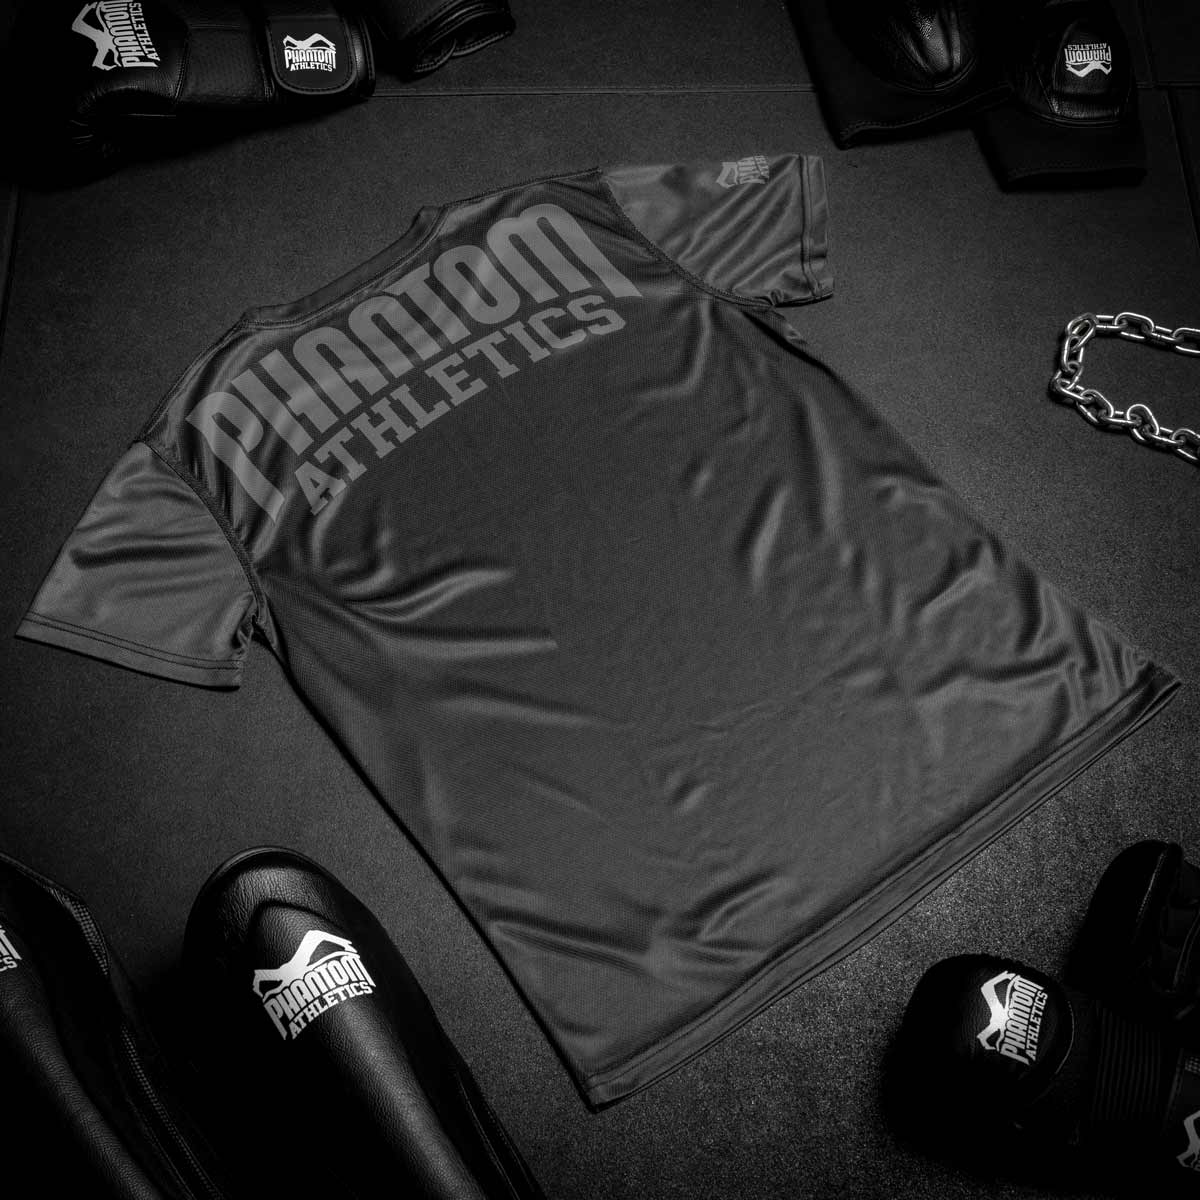 Das Phantom EVO Supporter Trainingsshirt für deinen Kampfsport. Atmungsaktiv und funktional. Ideal für MMA, BJJ oder Muay Thai.